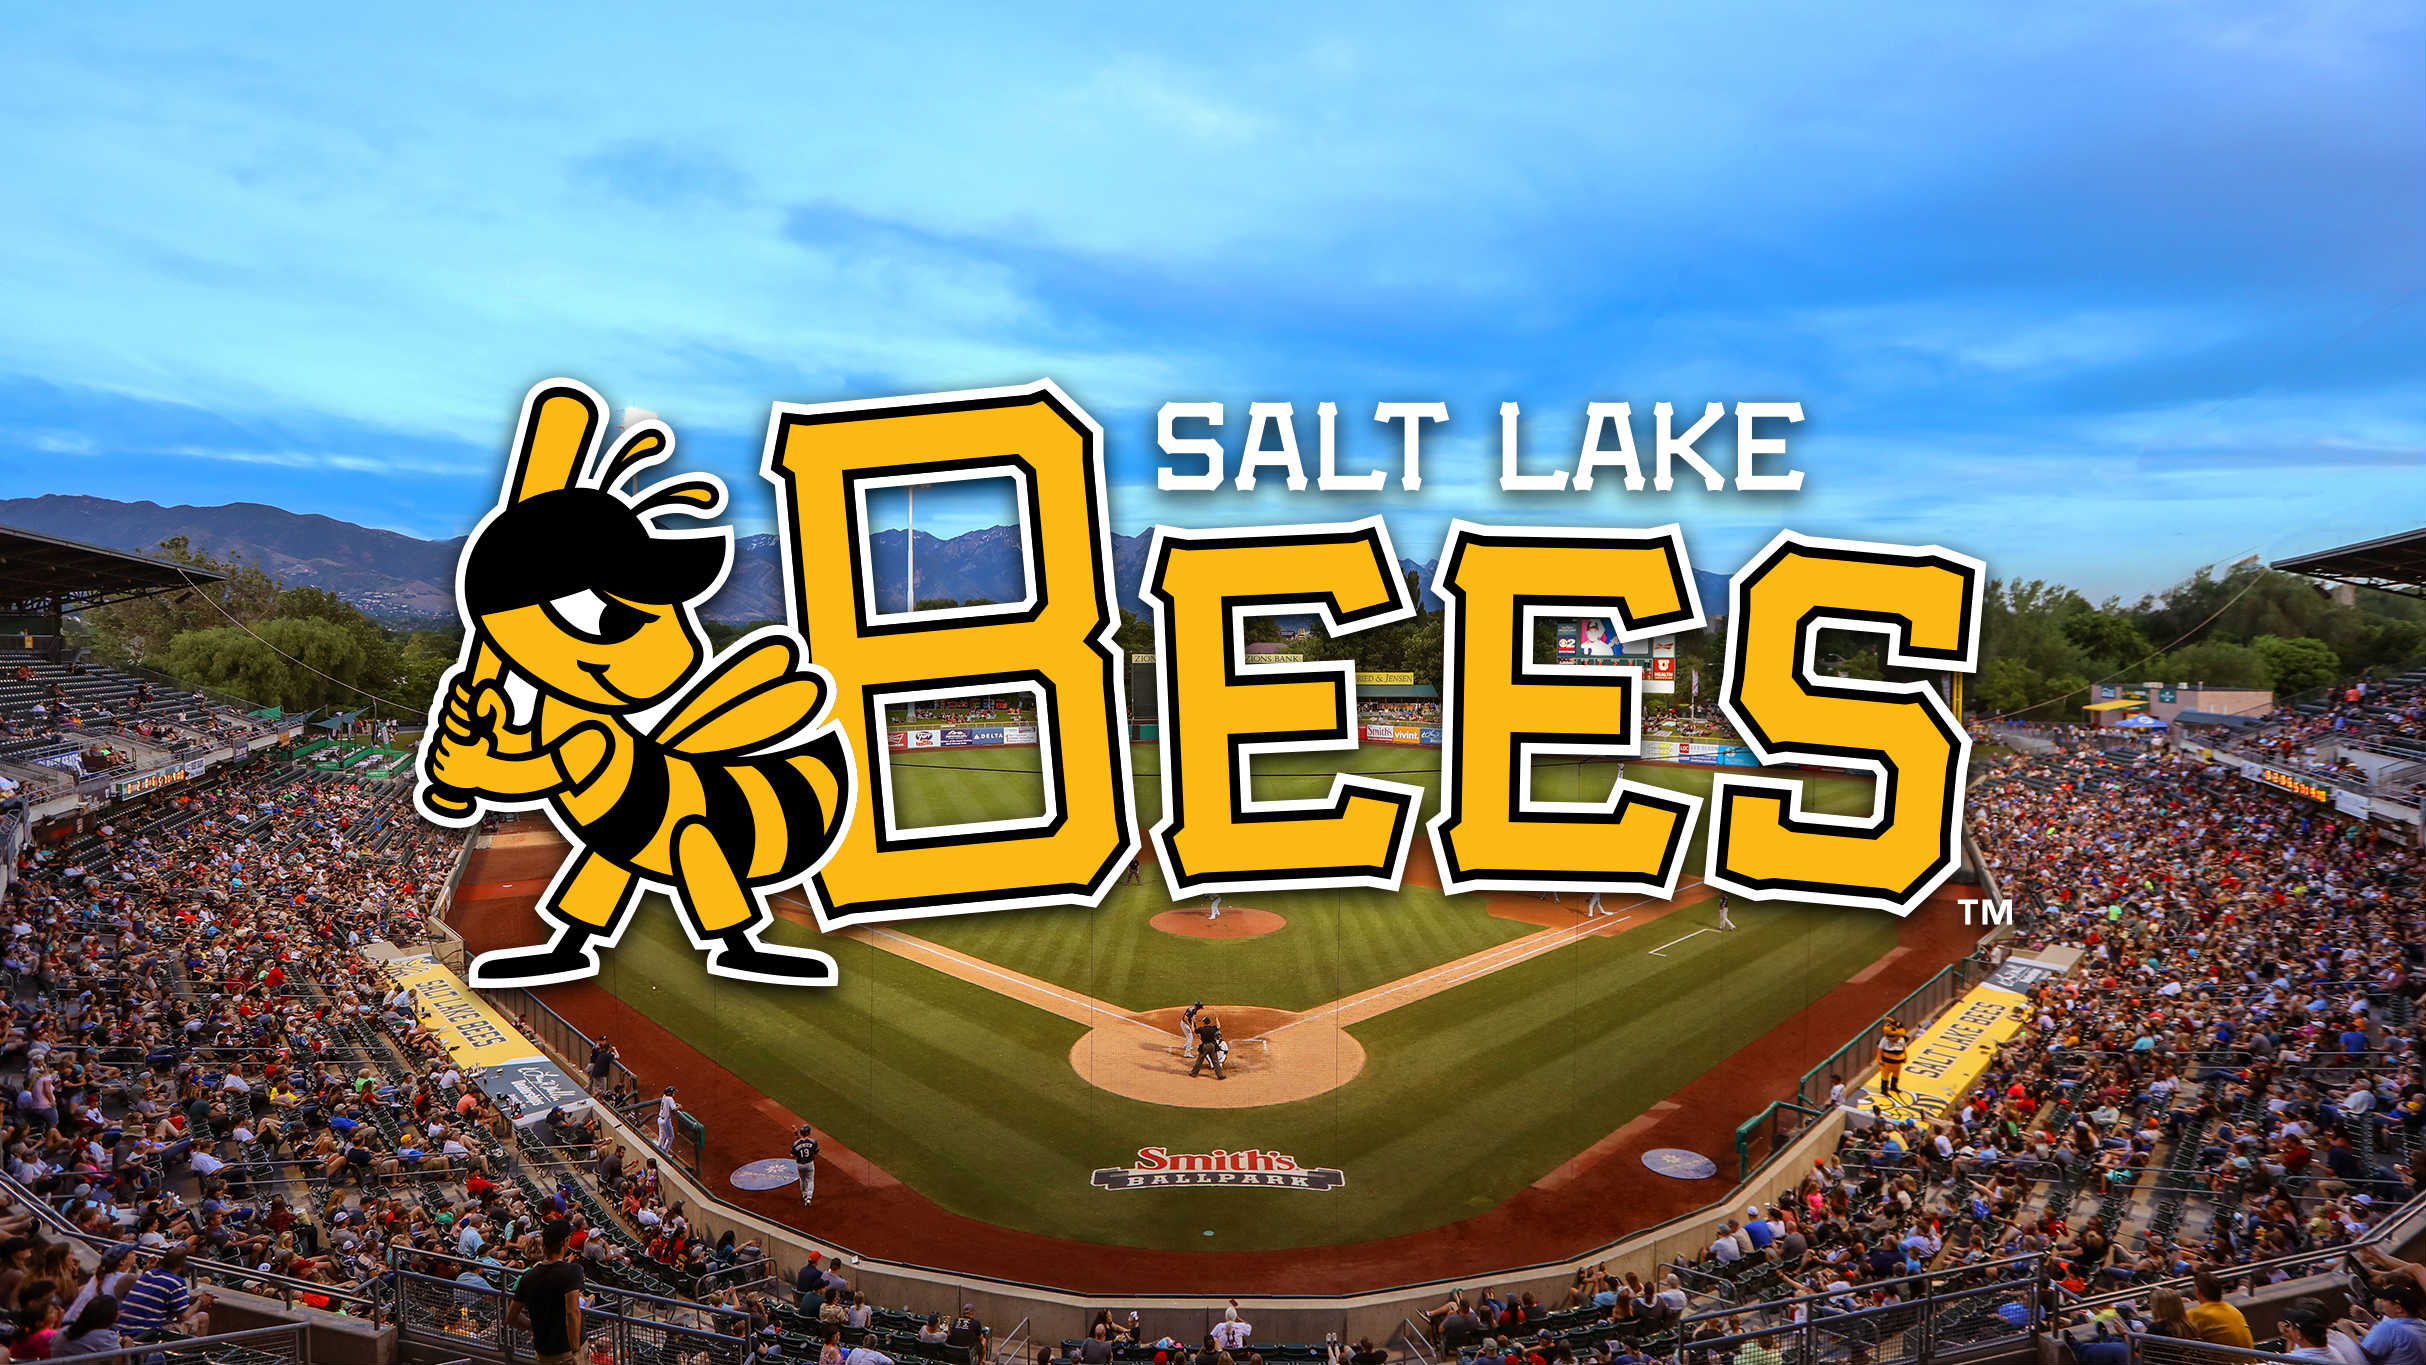 Salt Lake Bees vs. El Paso Chihuahuas at Smith's Ballpark